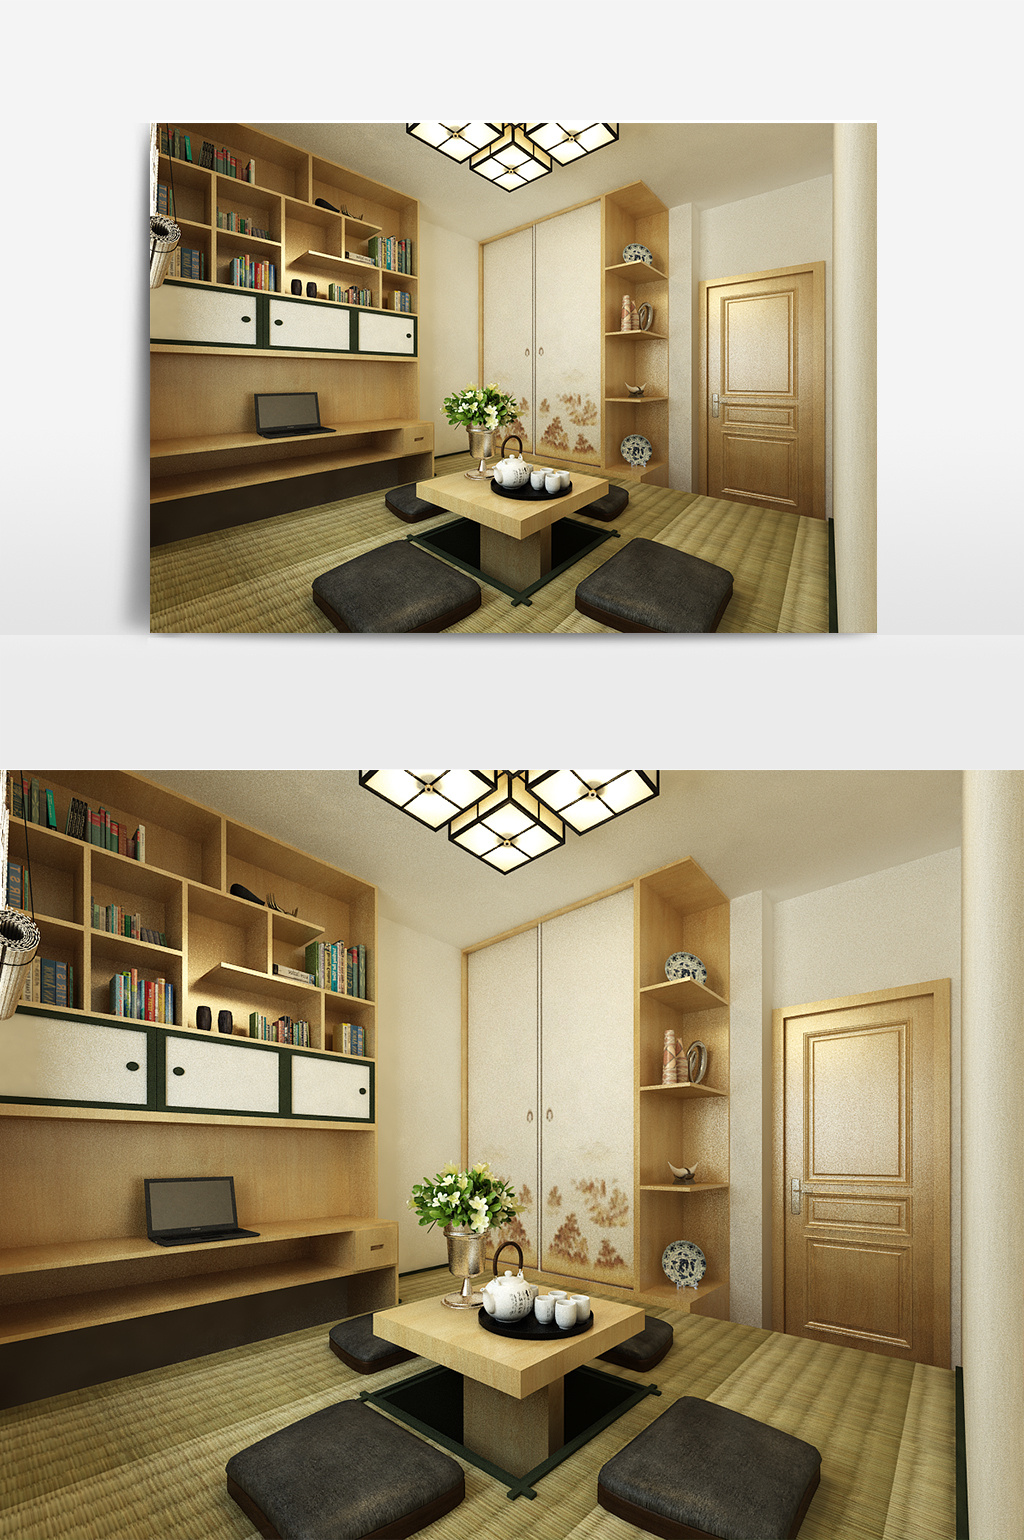 日式禅风茶室室内设计模型模板免费下载 